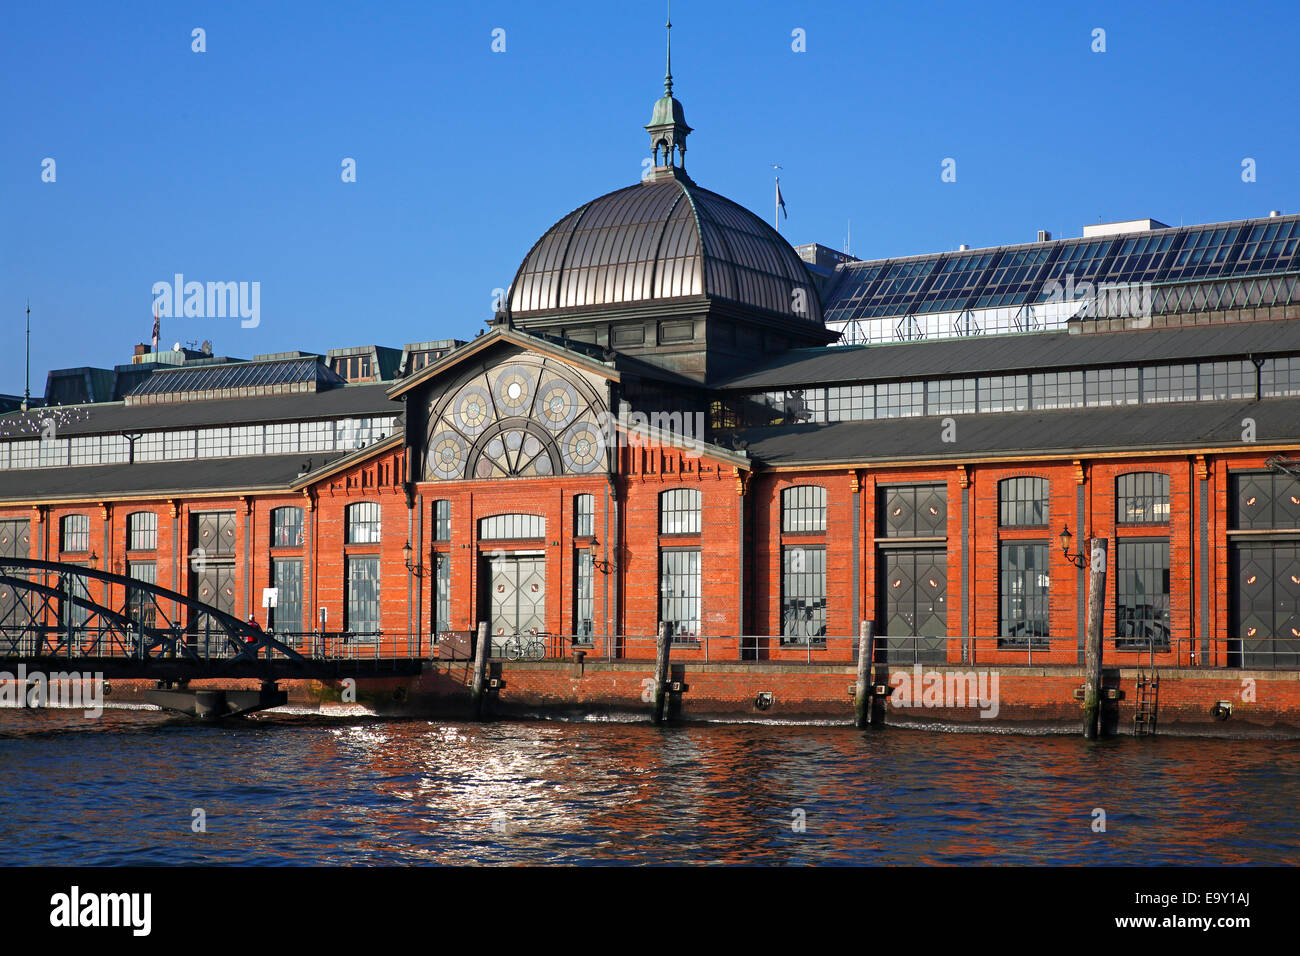 Event centre, former Fish Auction Hall, Altona Fish Market, Elbe, Hamburg, Germany Stock Photo